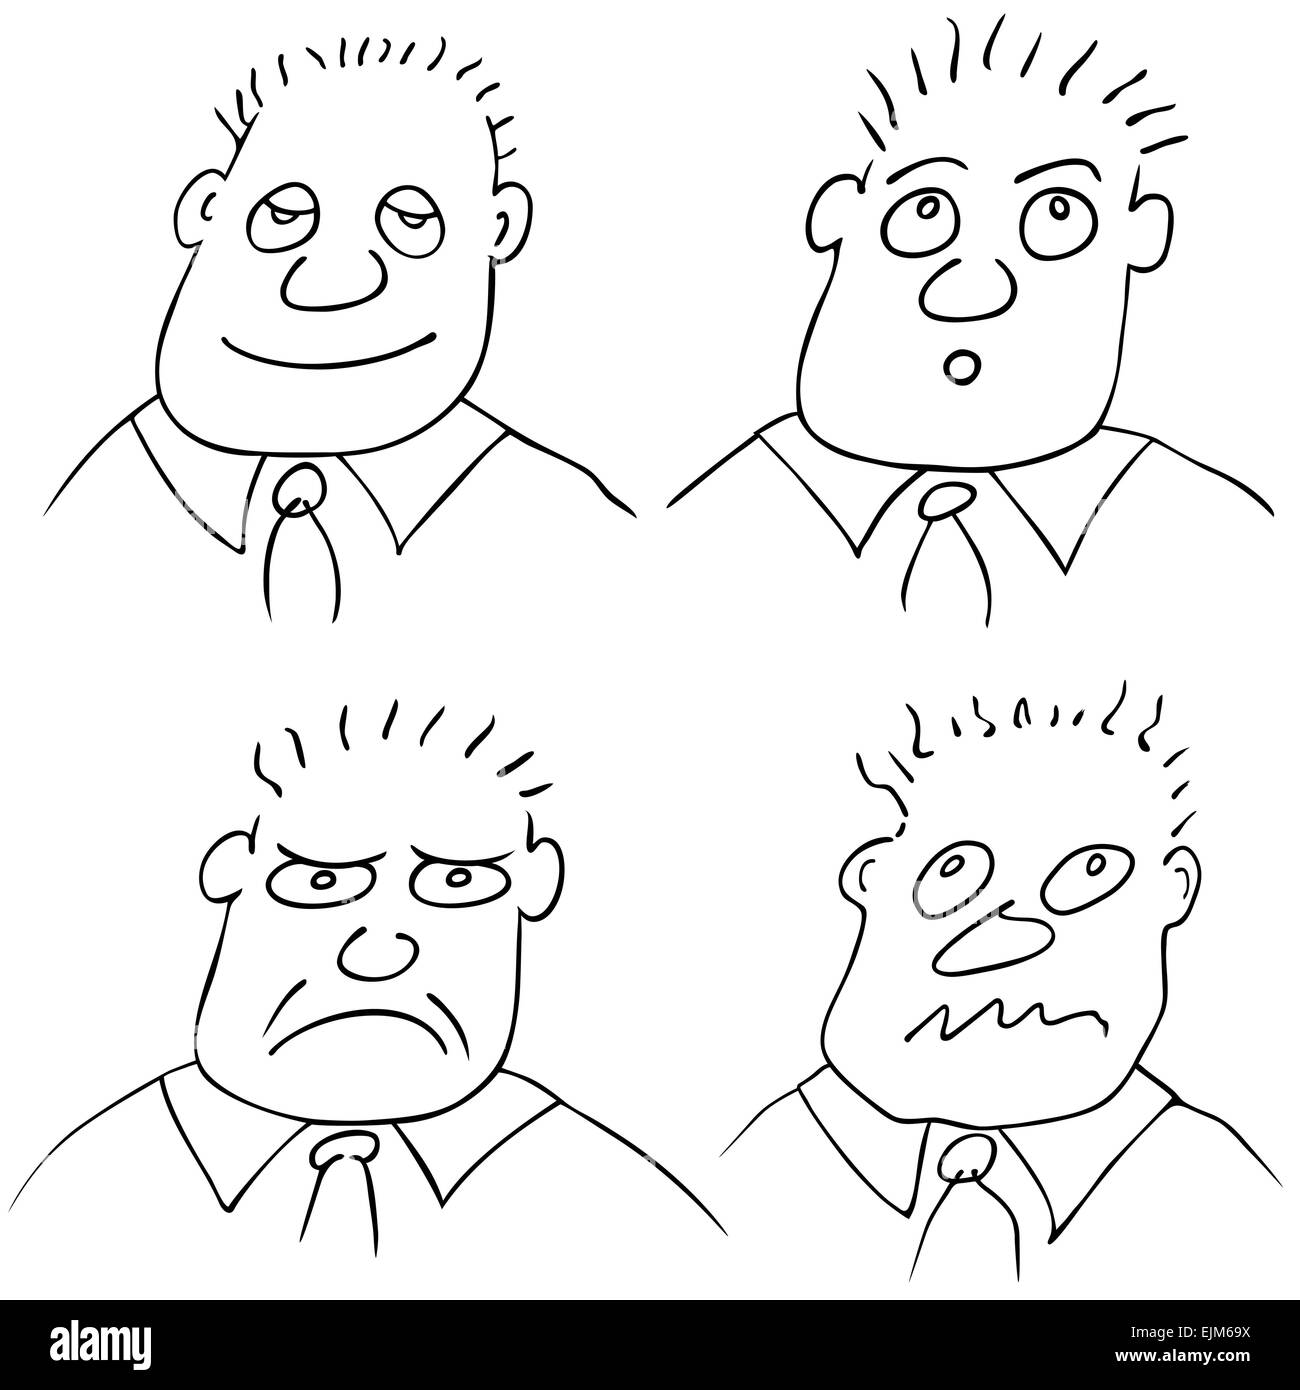 Vektor-Illustration des Mannes mit verschiedenen Gesichtsausdrücken Stock Vektor